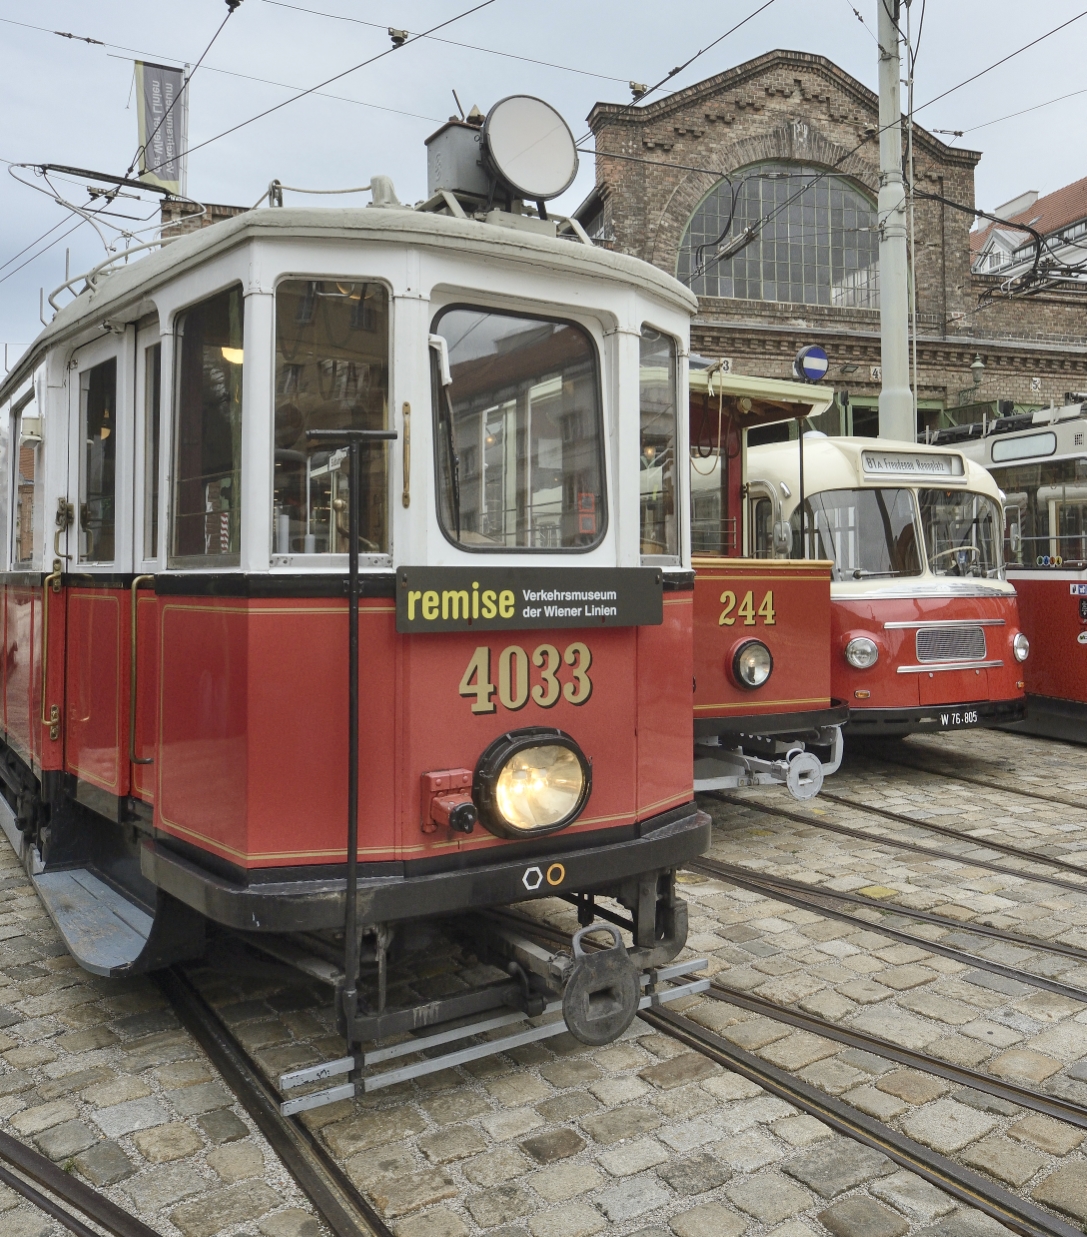 Einige der ausgestellten Fahrzeuge des Verkehrsmuseums der Wiener Linien.